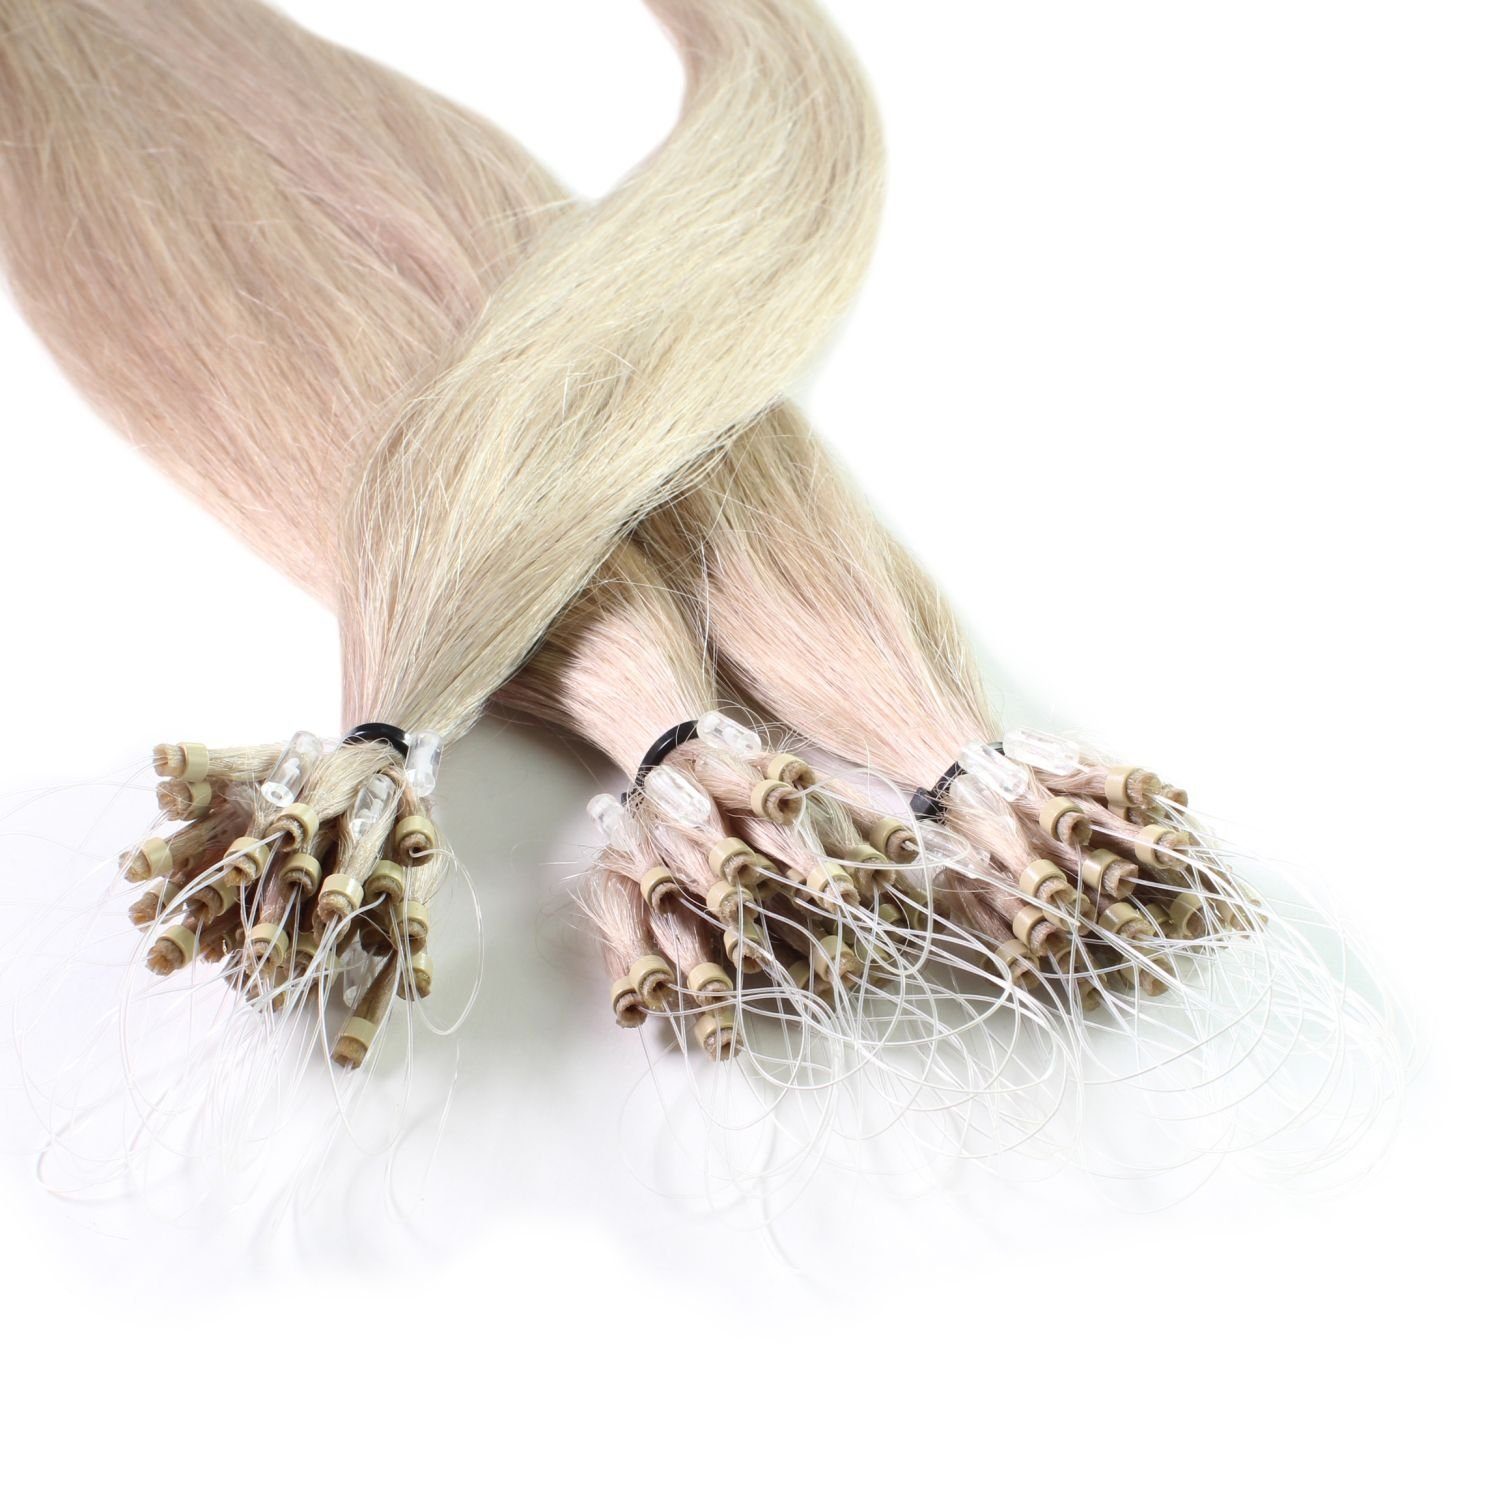 hair2heart Echthaar-Extension Microring Loops - glatt #10/1 Hell-Lichtblond Asch 0.5g 60cm